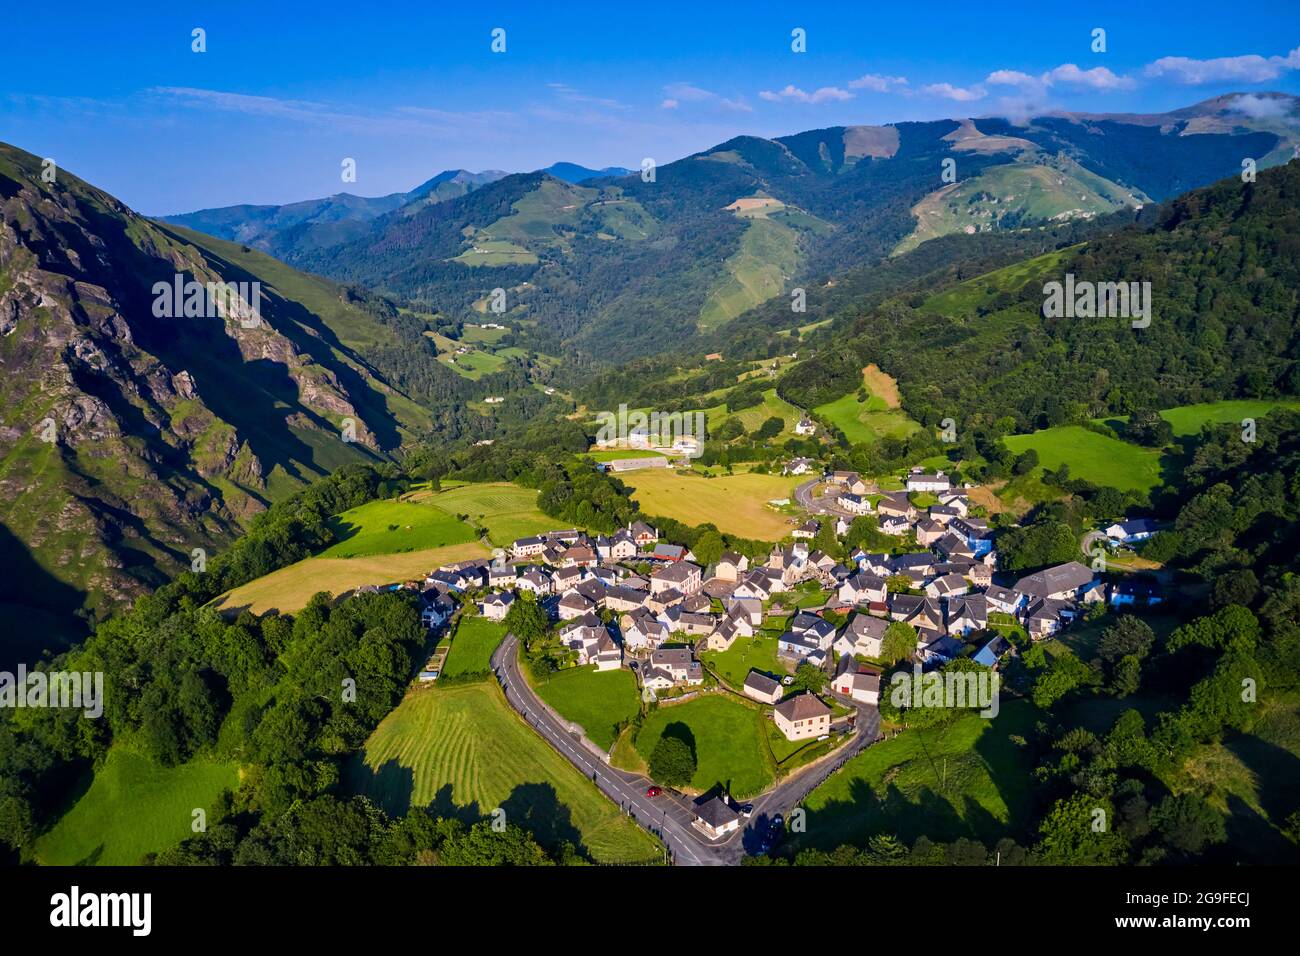 France, Pyrénées-Atlantiques (64), Basque Country, Larrau village Stock Photo